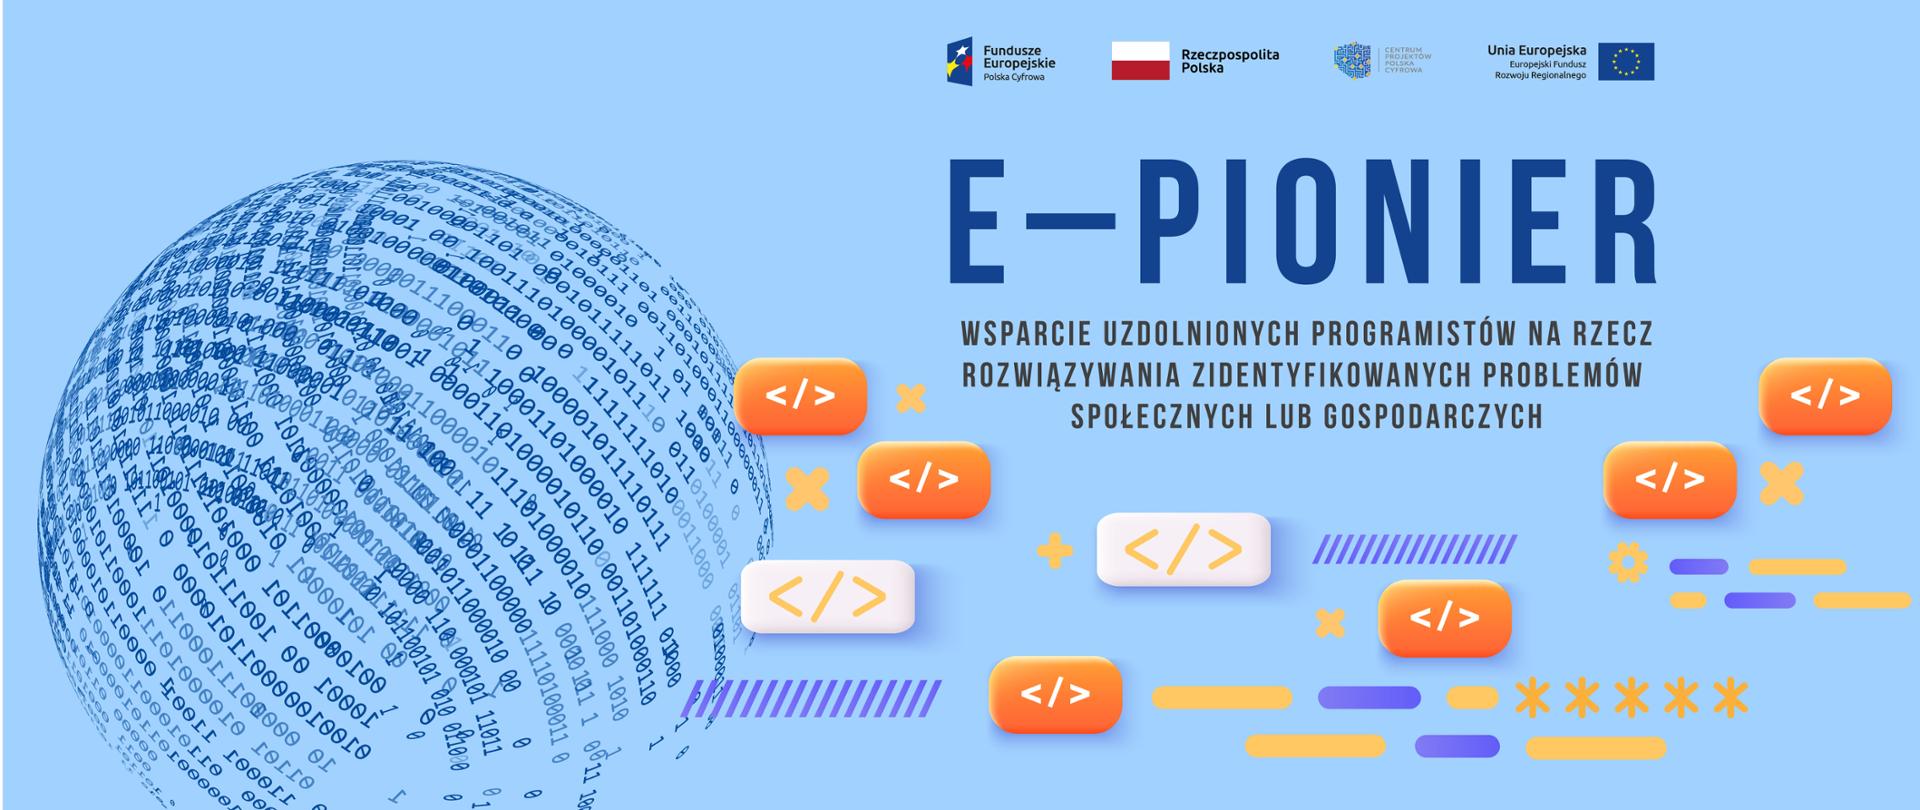 e–Pionier – wsparcie uzdolnionych programistów na rzecz rozwiązywania zidentyfikowanych problemów społecznych lub gospodarczych